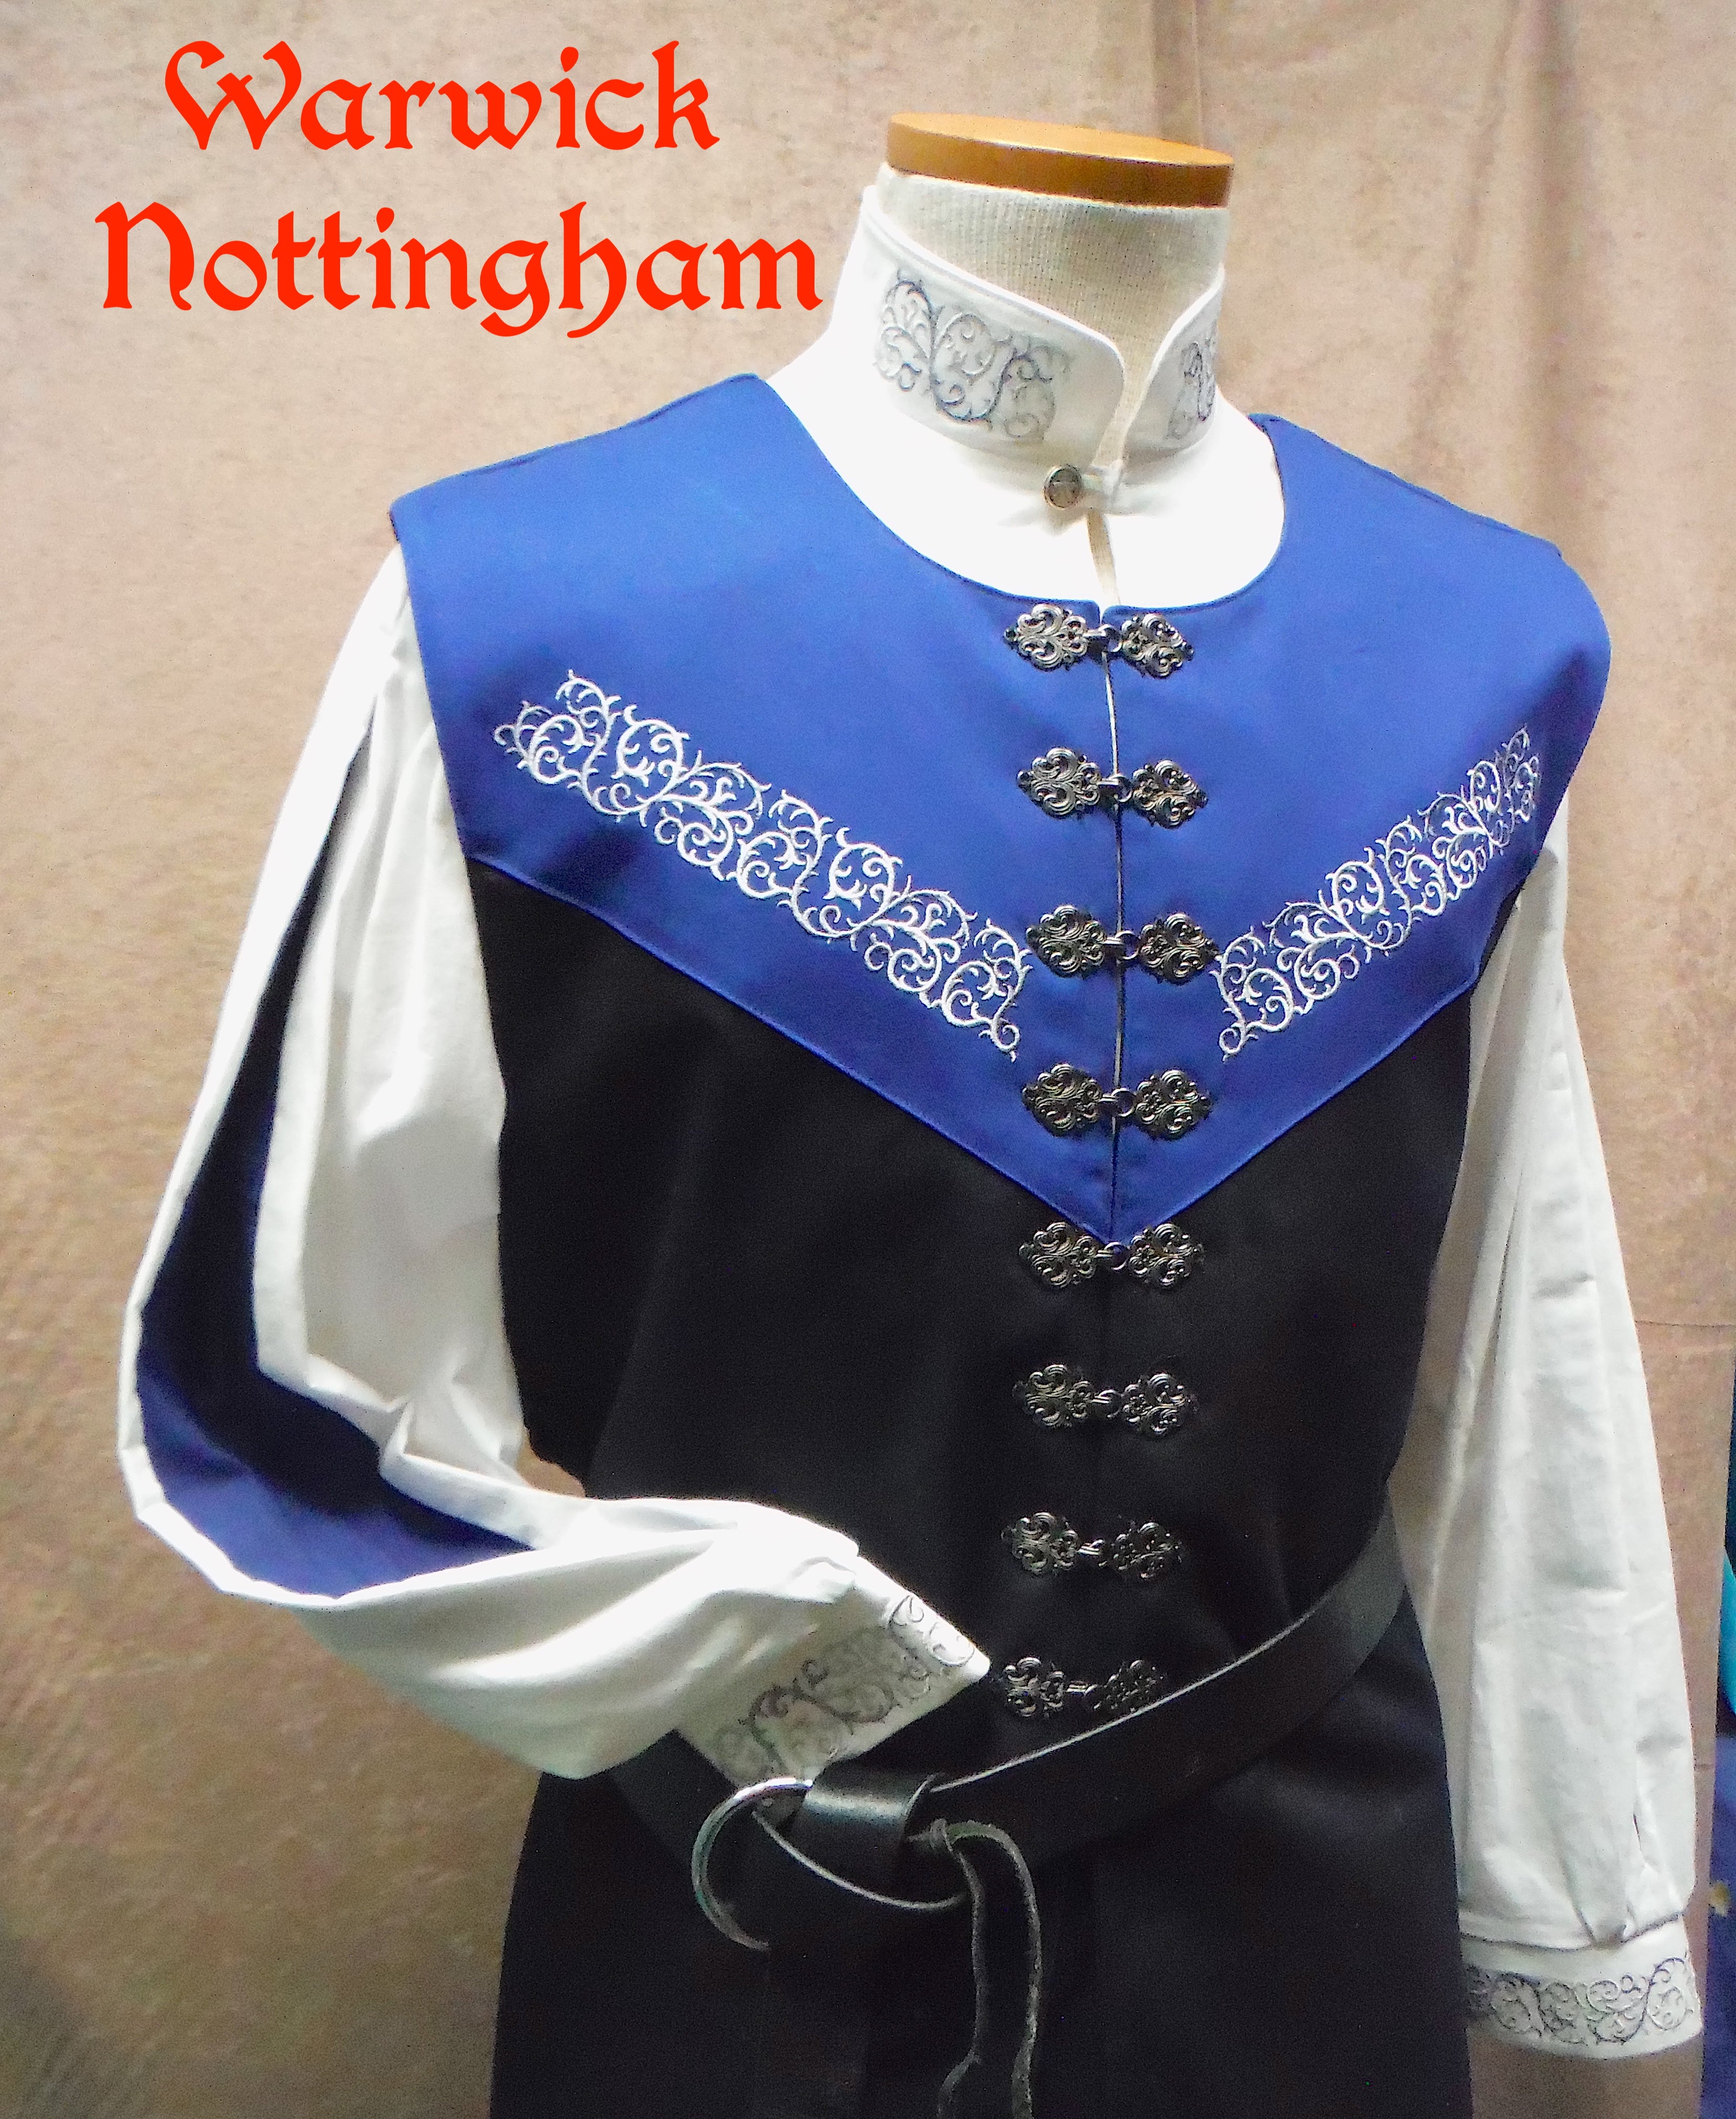 Nottingham Vest - all options